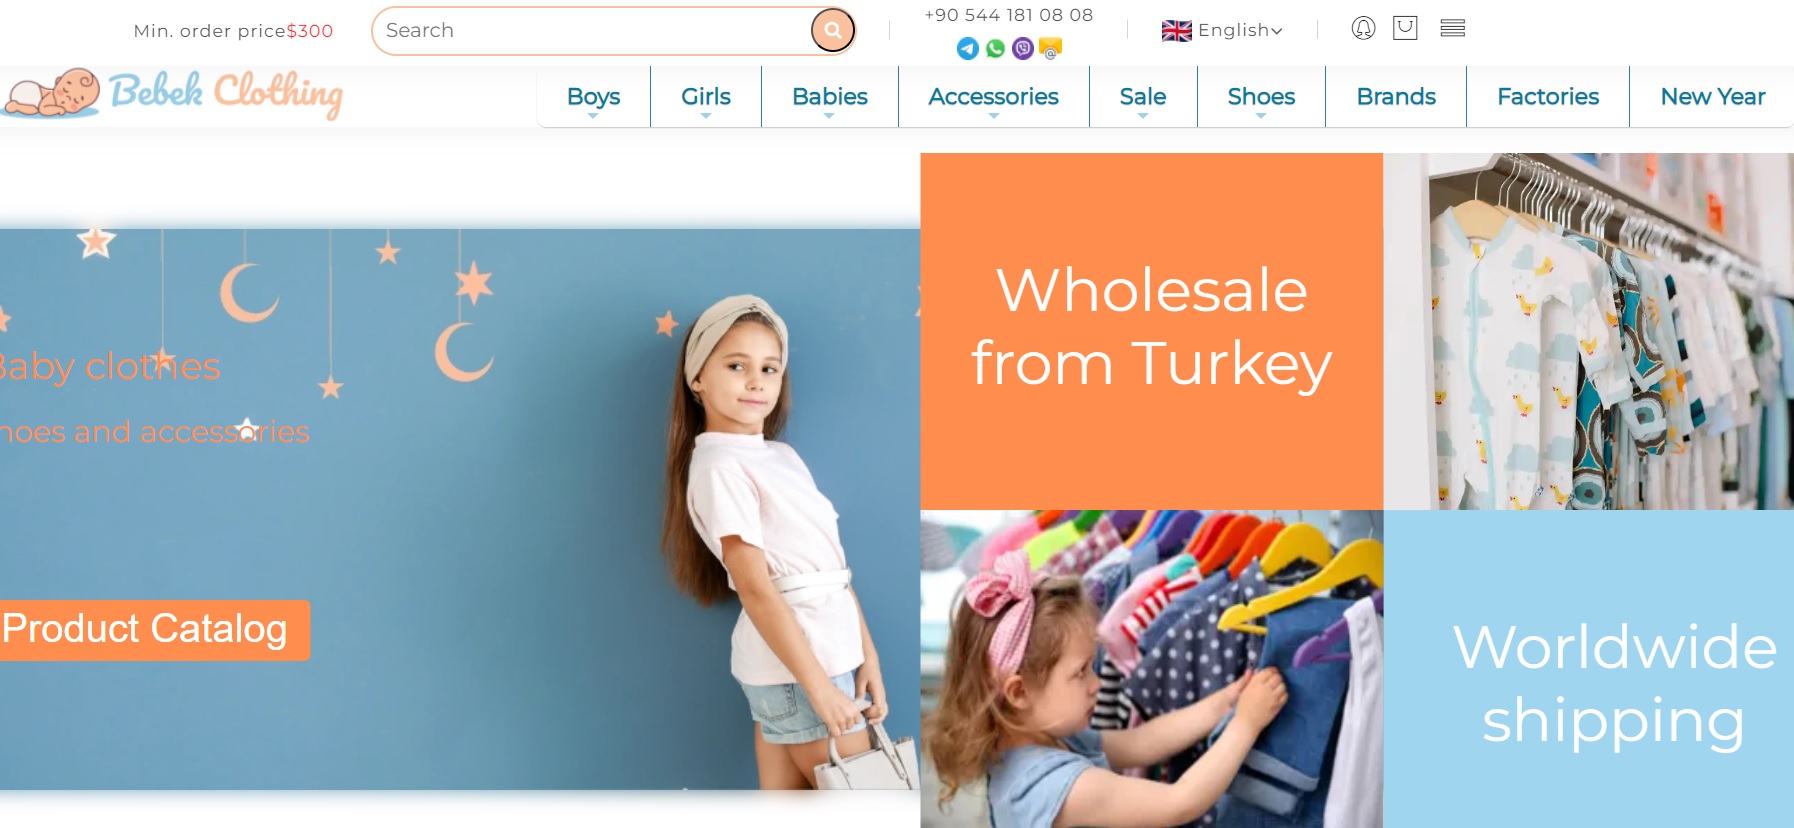 bebek.clothing vente en gros de vêtements pour enfants Turquie